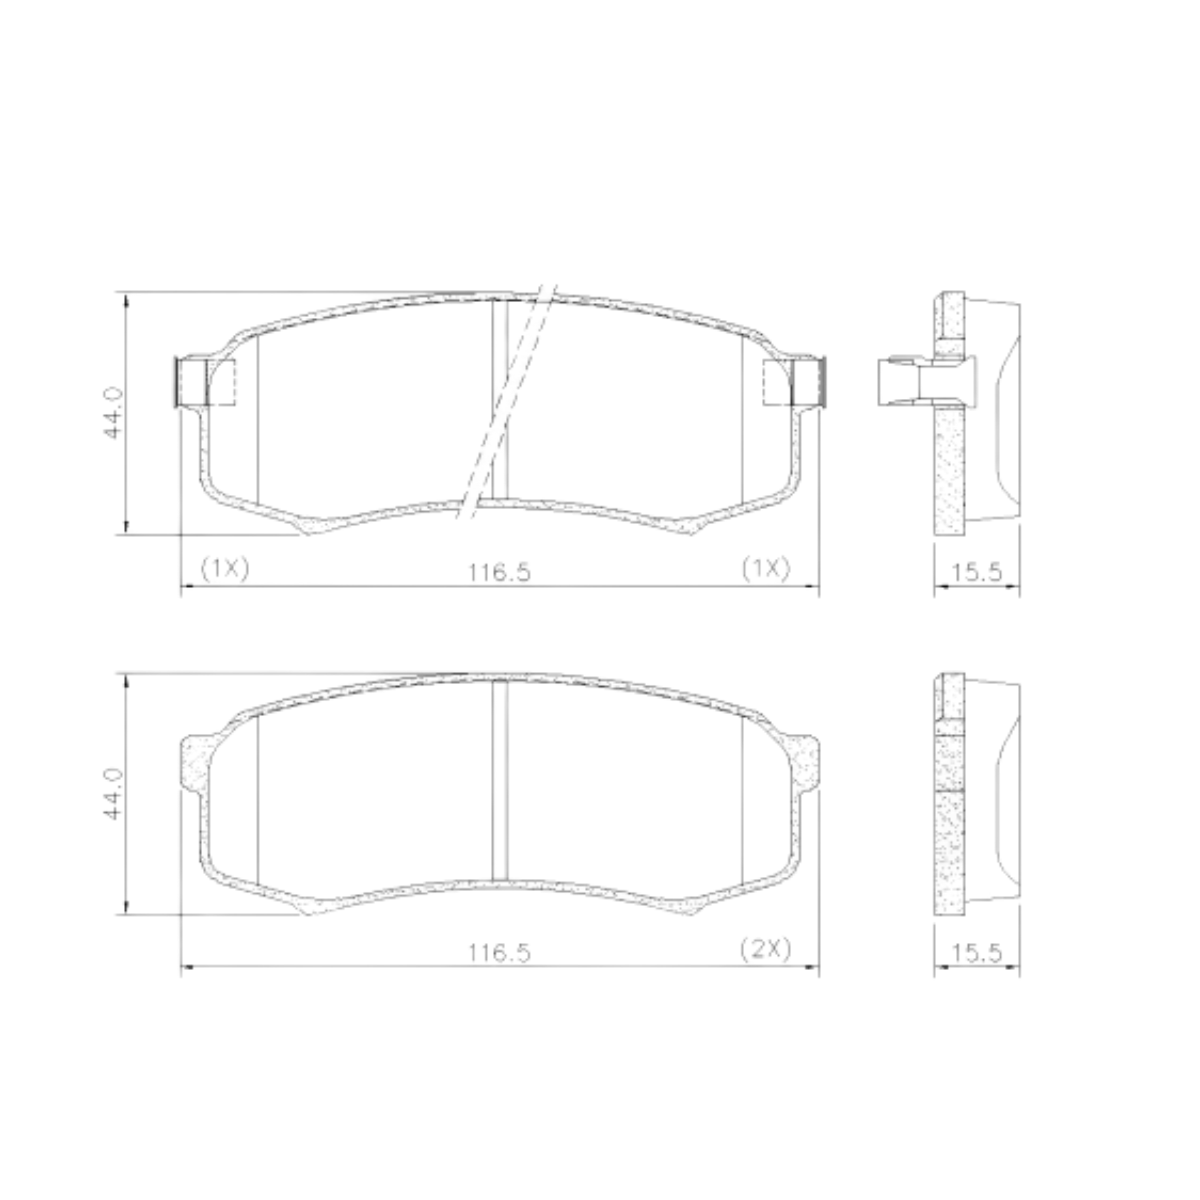 Pastilha Freio Mitsubishi Pajero 3.2 16v Full Diesel 5 Portas 2014 Ate 2020 Traseira, Ceramica Fras-le Pd-695-cmaxx